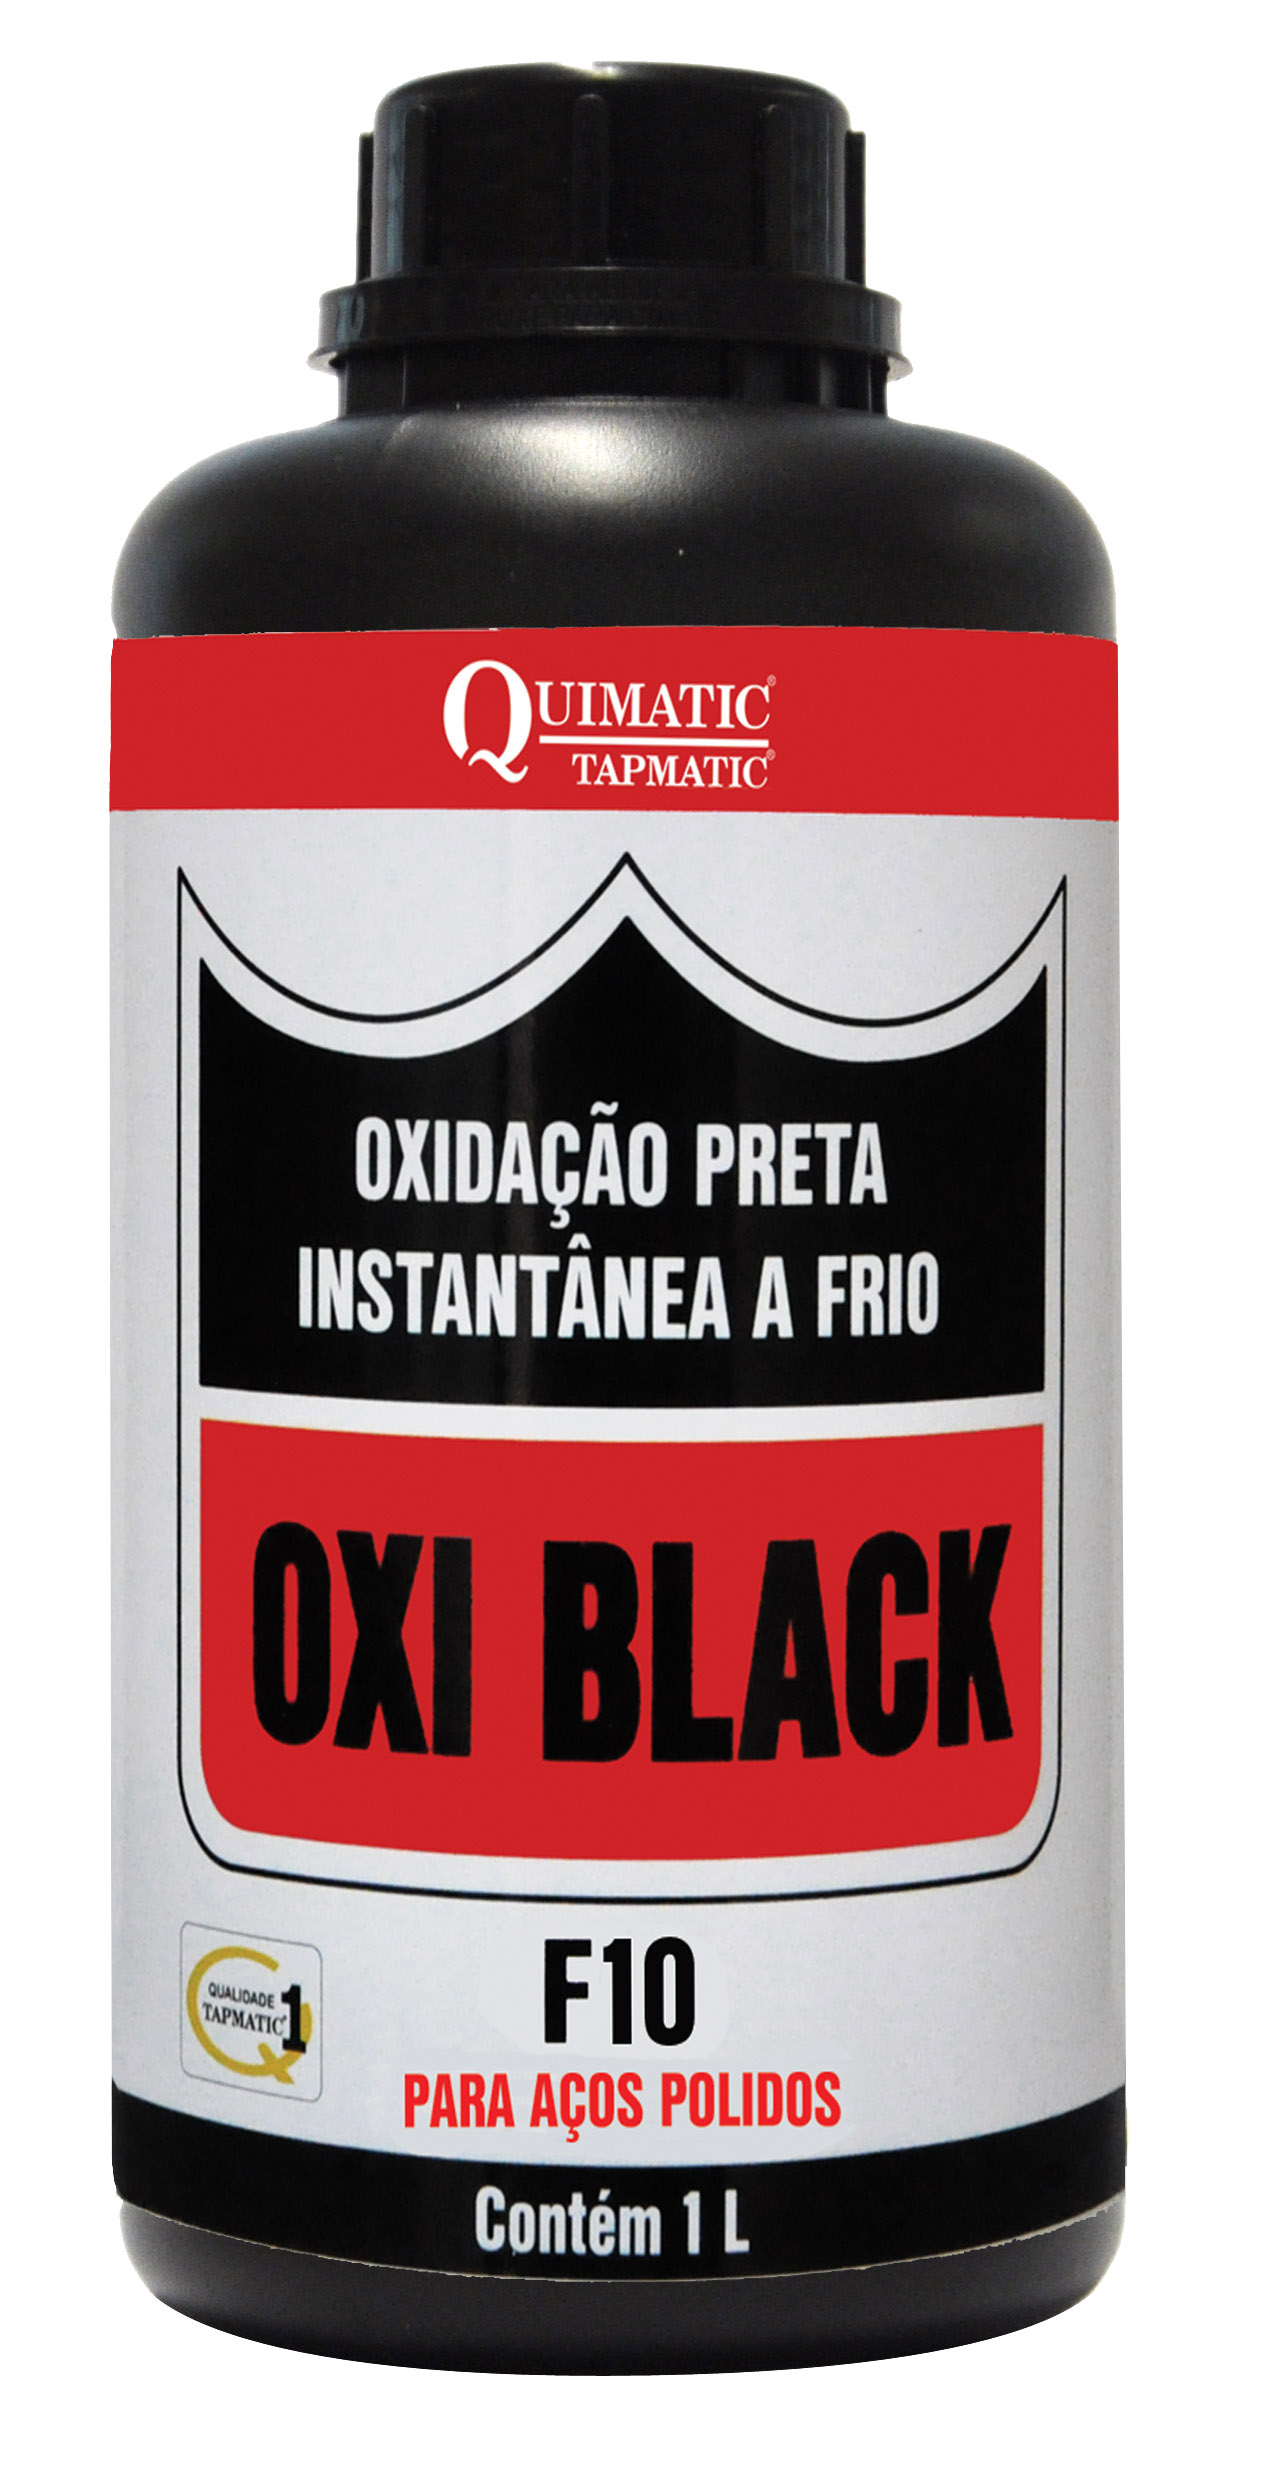 Oxidação Preta Instantânea a Frio OXI BLACK F10 1 Litro